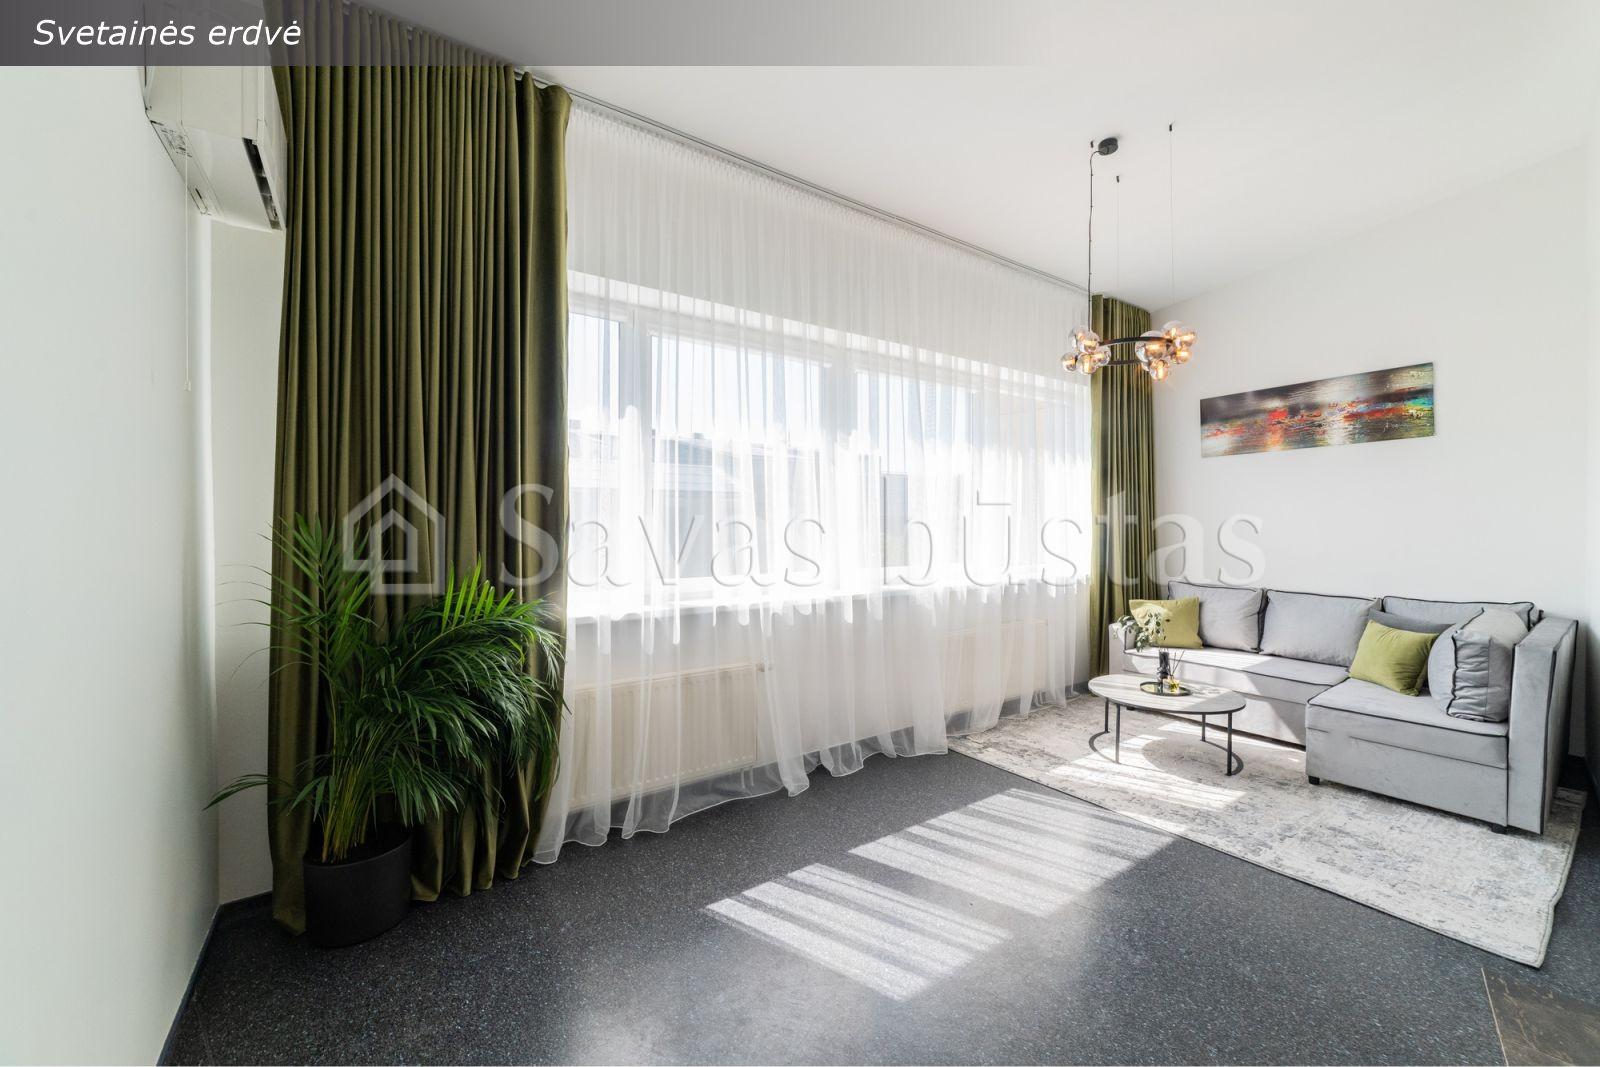 Parduodami modernūs loftinio tipo 2 kambarių išskirtiniai apartamentai pačiame Klaipėdos miesto centre — H. Manto g. 40!